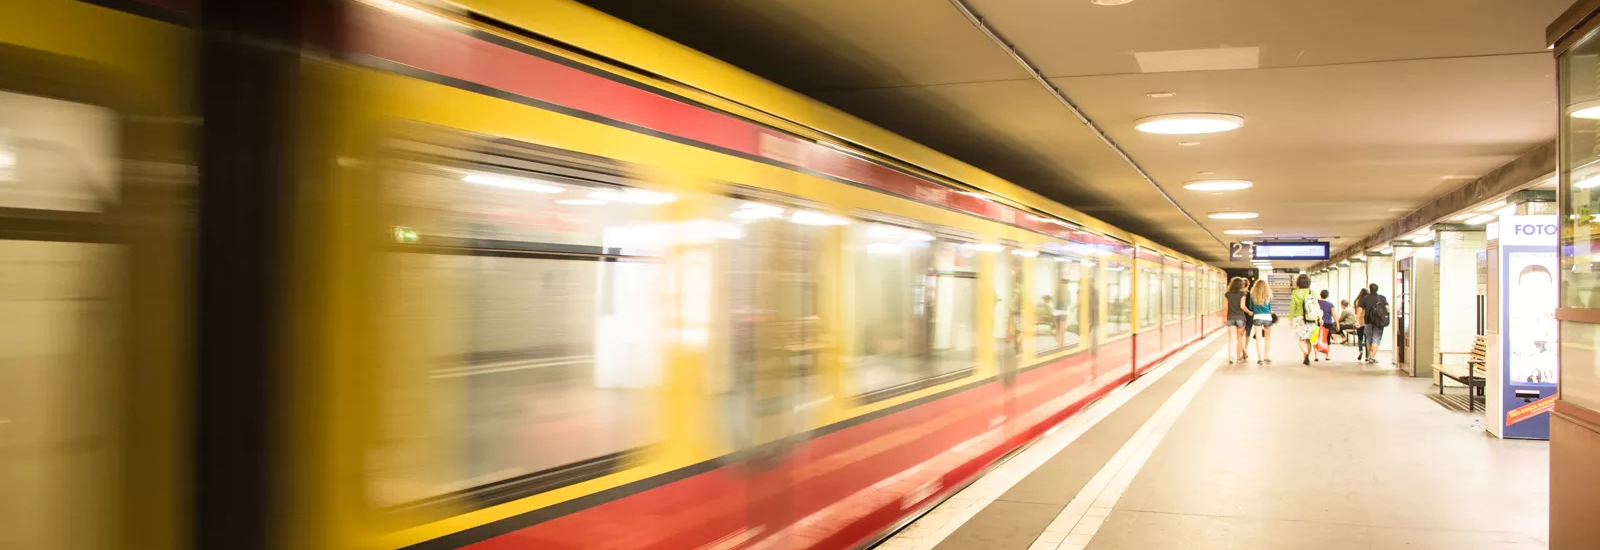 Foto einer Abfahrende S-Bahn im unterirdischen S-Bahnhof in Berlin